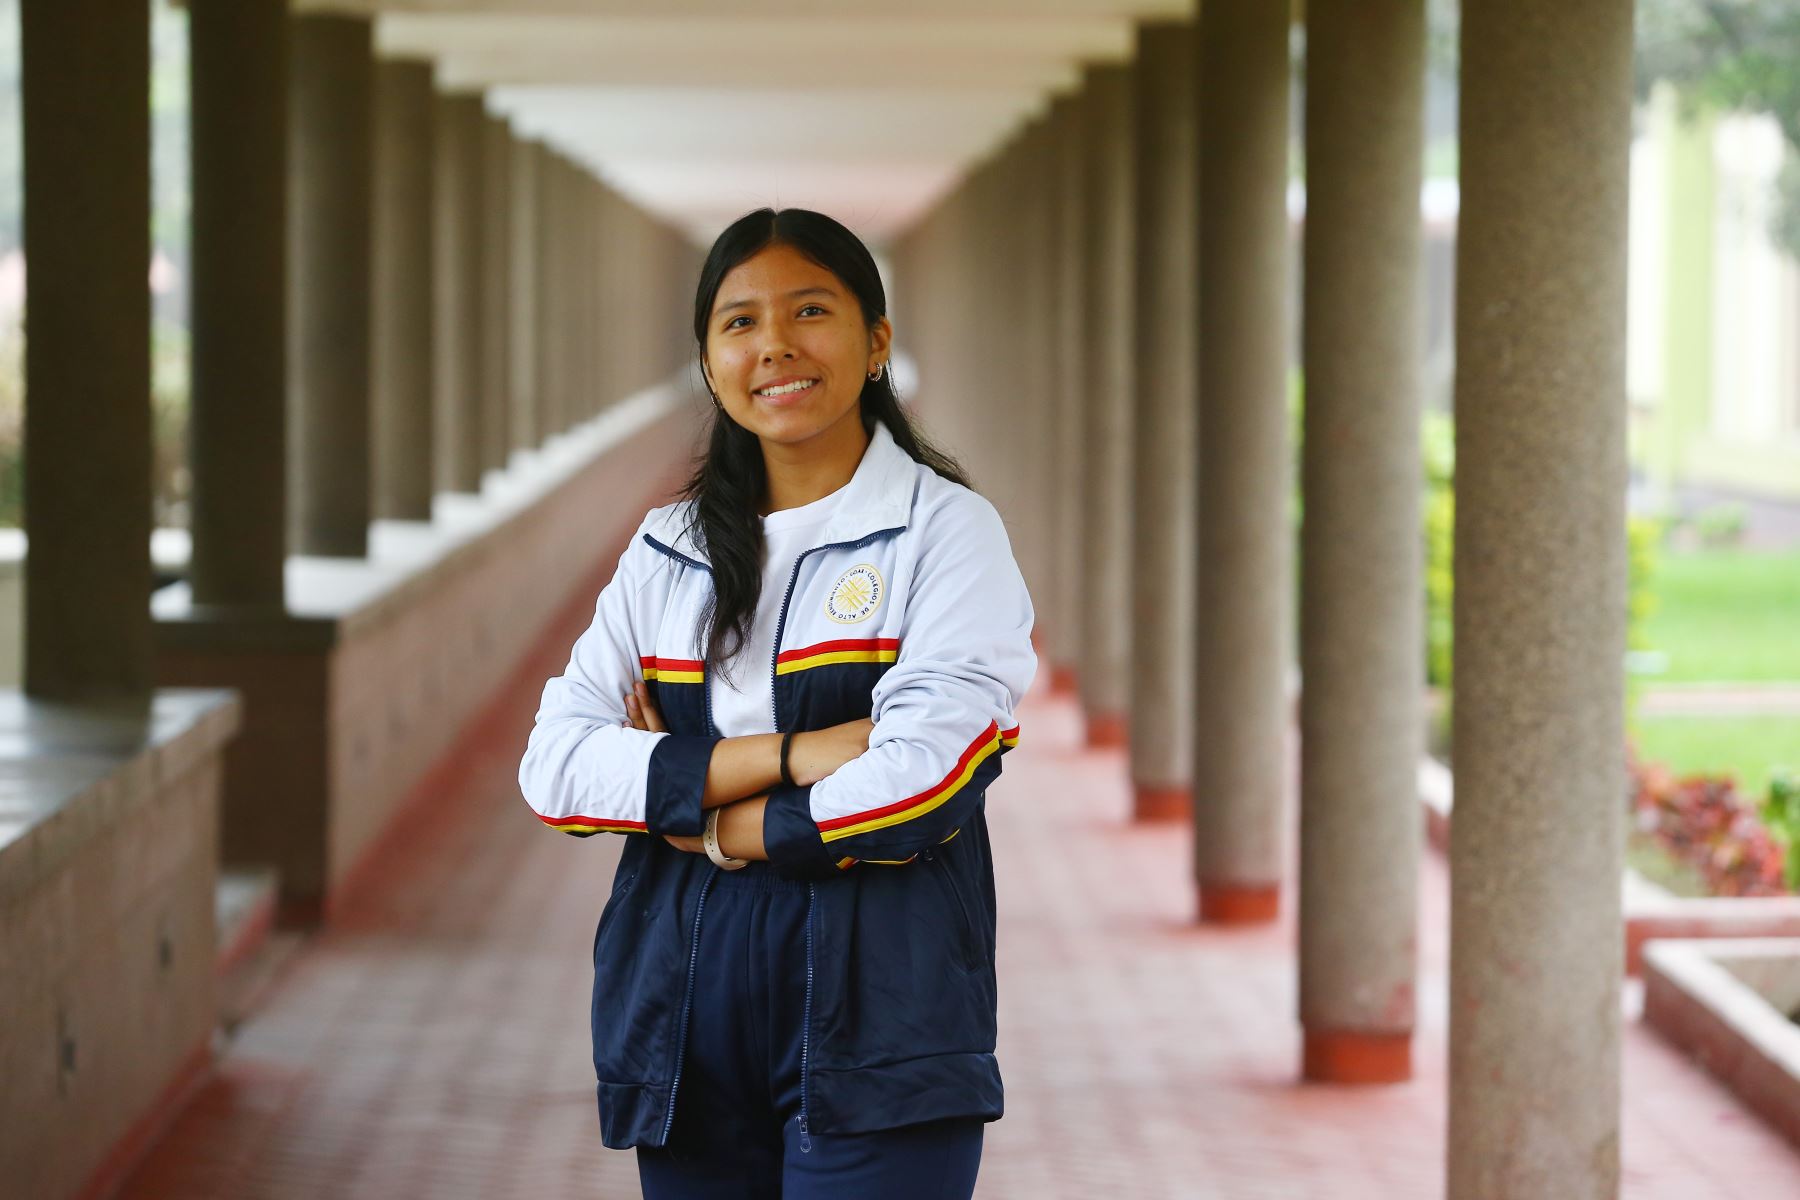 La estudiante Yamila Rivas Molina fue elegida como parte de la tripulación del programa "Ella es Astronauta" para visitar la NASA.  Foto: ANDINA/Eddy Ramos